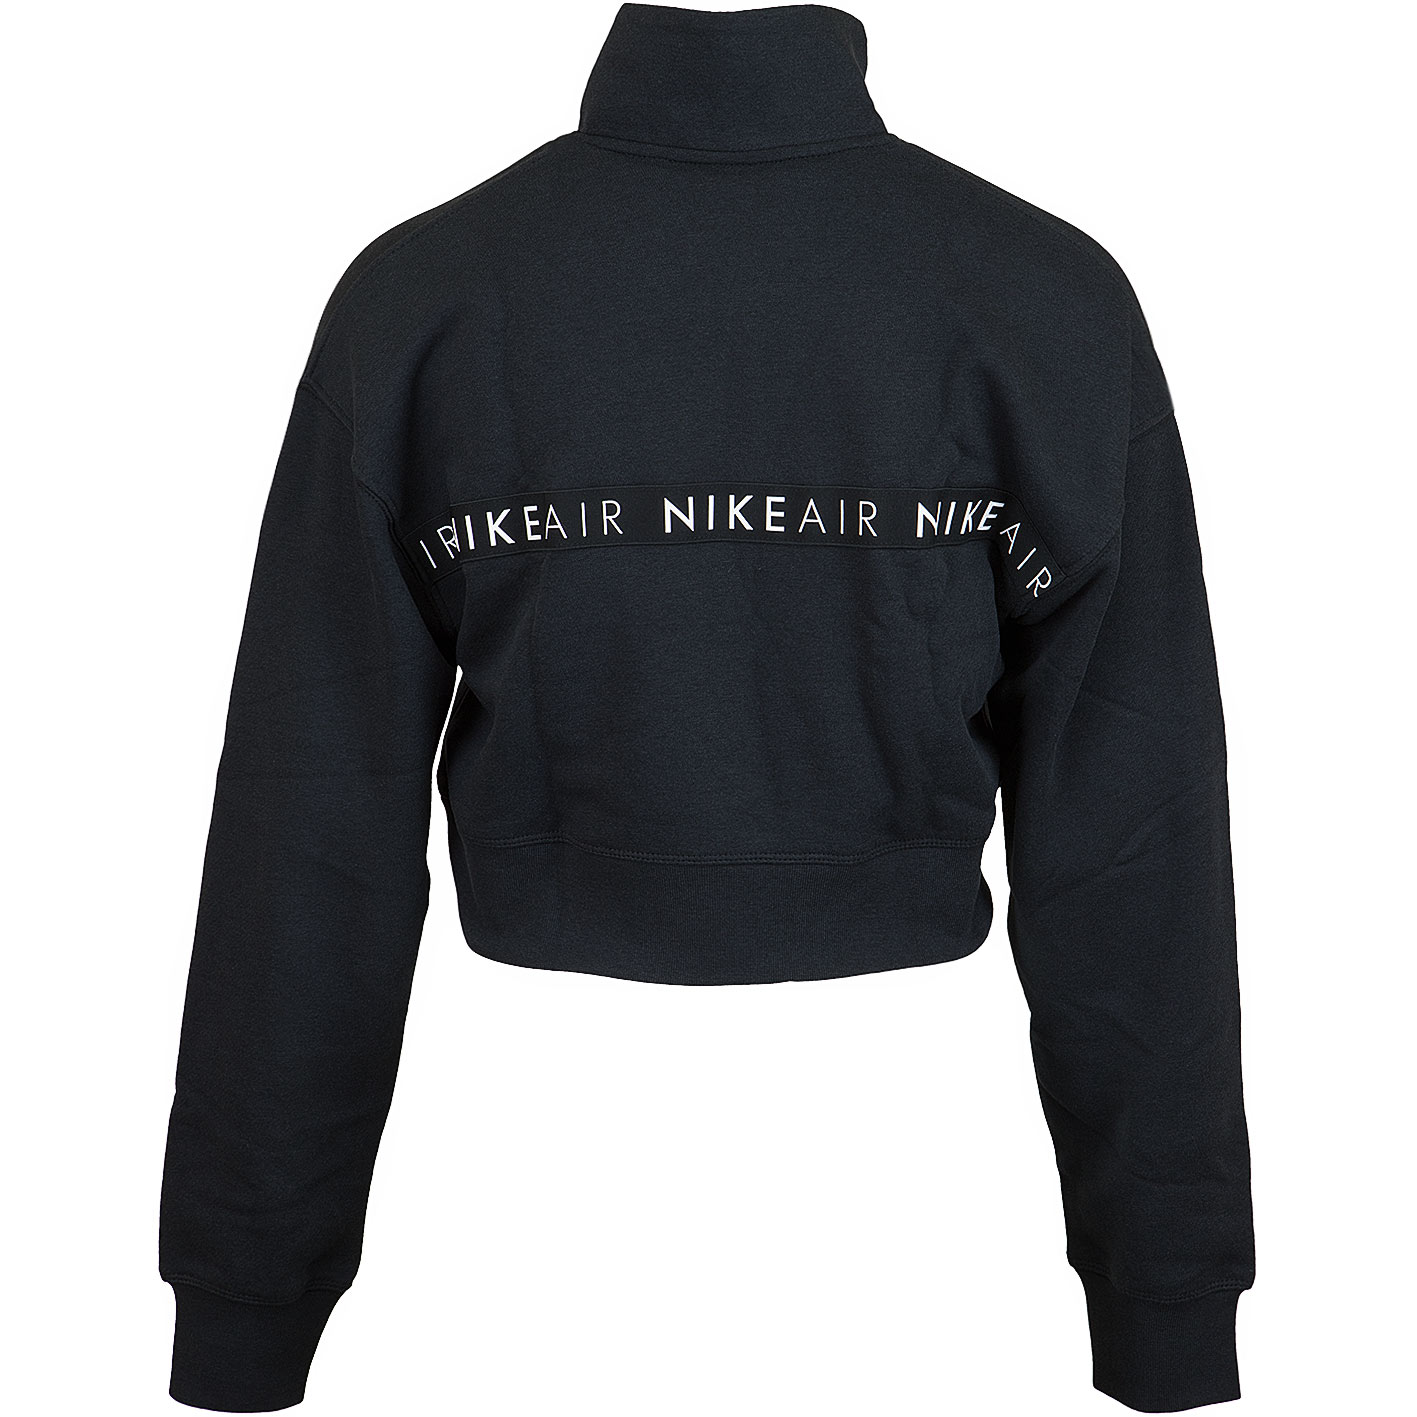 ☆ Nike Damen Sweatshirt Air HZ schwarz - hier bestellen!